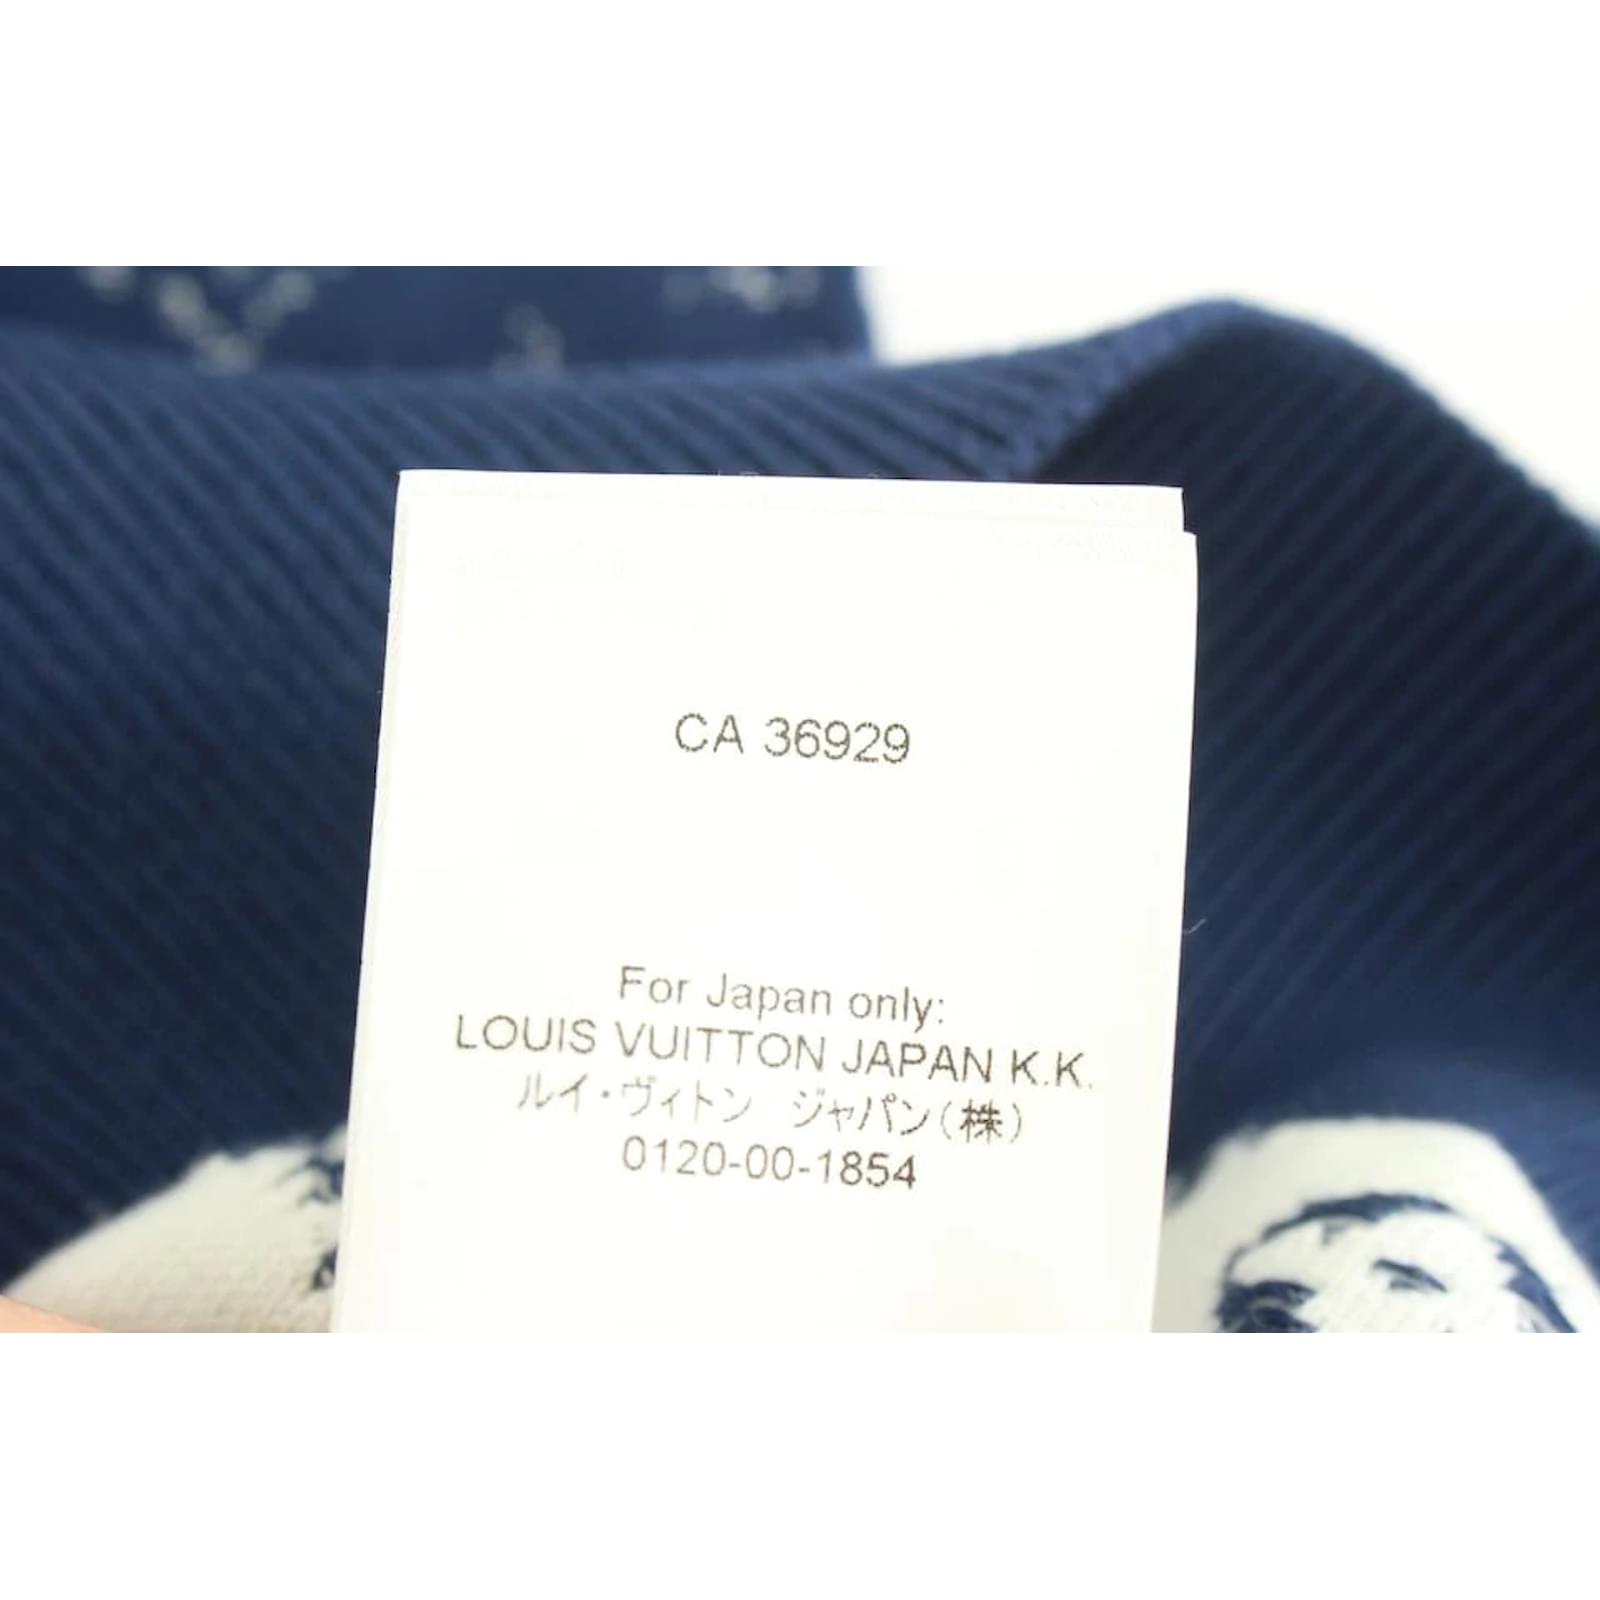 Louis Vuitton Luxury Sweaters (1A8WO7, 1A8WO6, 1A8WO5, 1A8WO4, 1A8FM3,  1A8FM2, 1A8FM1, 1A8FLZ, 1A8FM0/1A8WO9, 1A8FLY/1A8WO8)